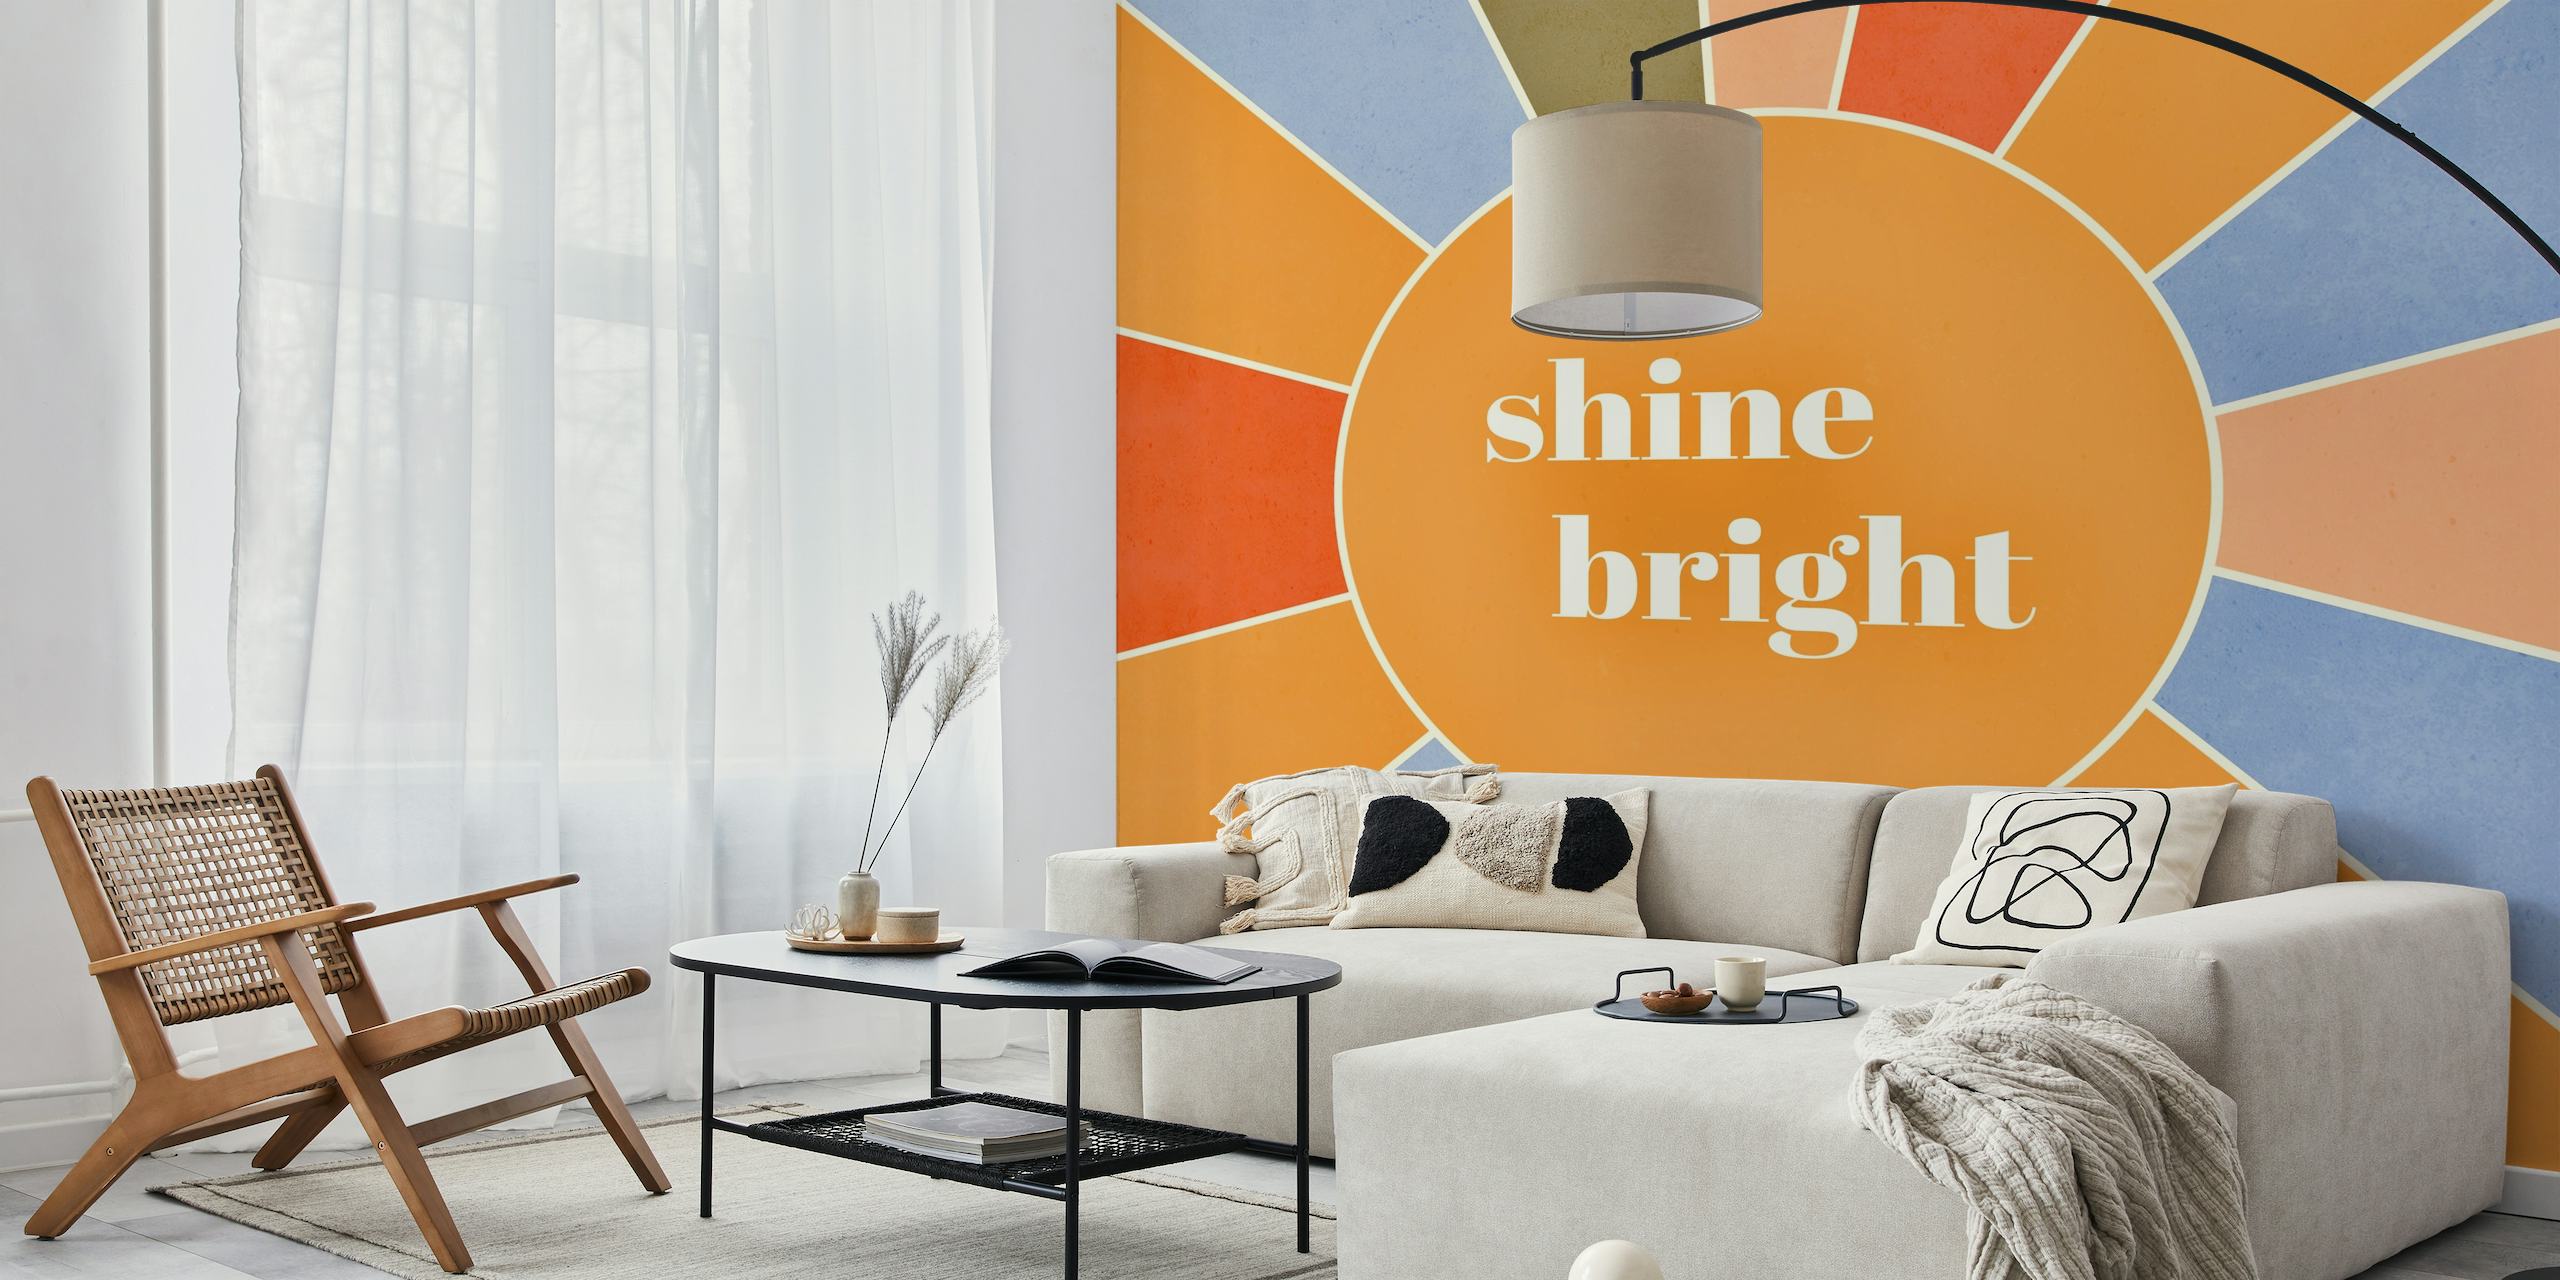 Shine bright wallpaper